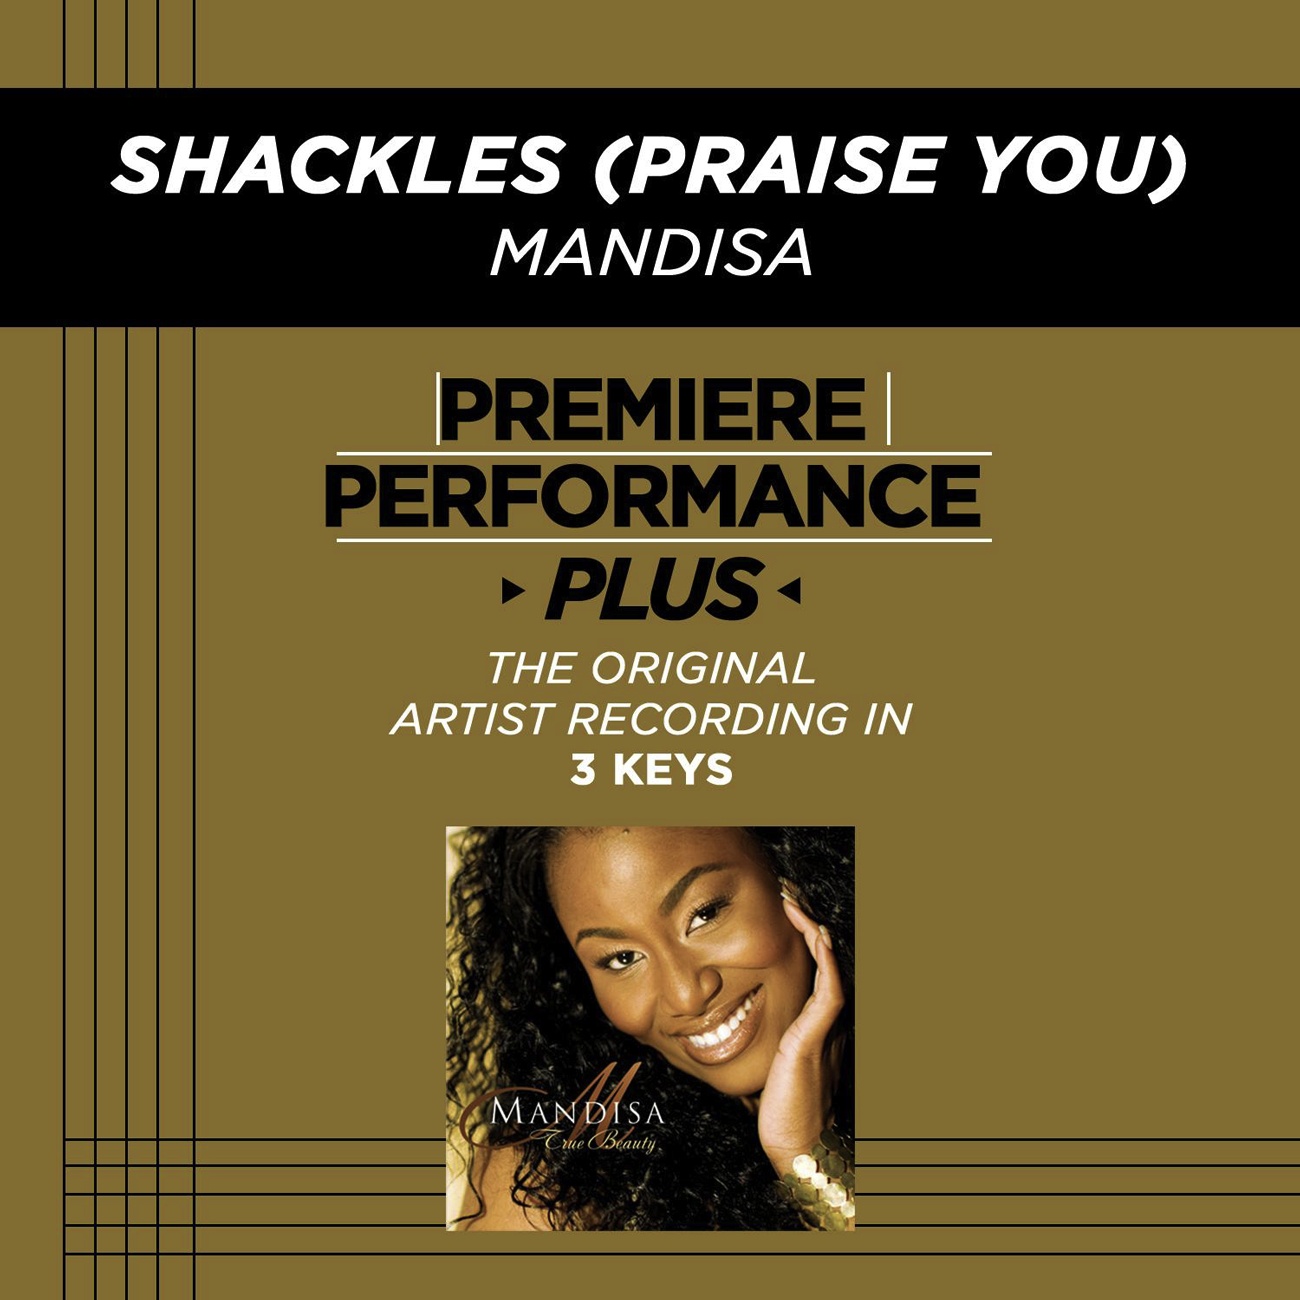 Premiere Performance Plus: Shackles (Praise You)